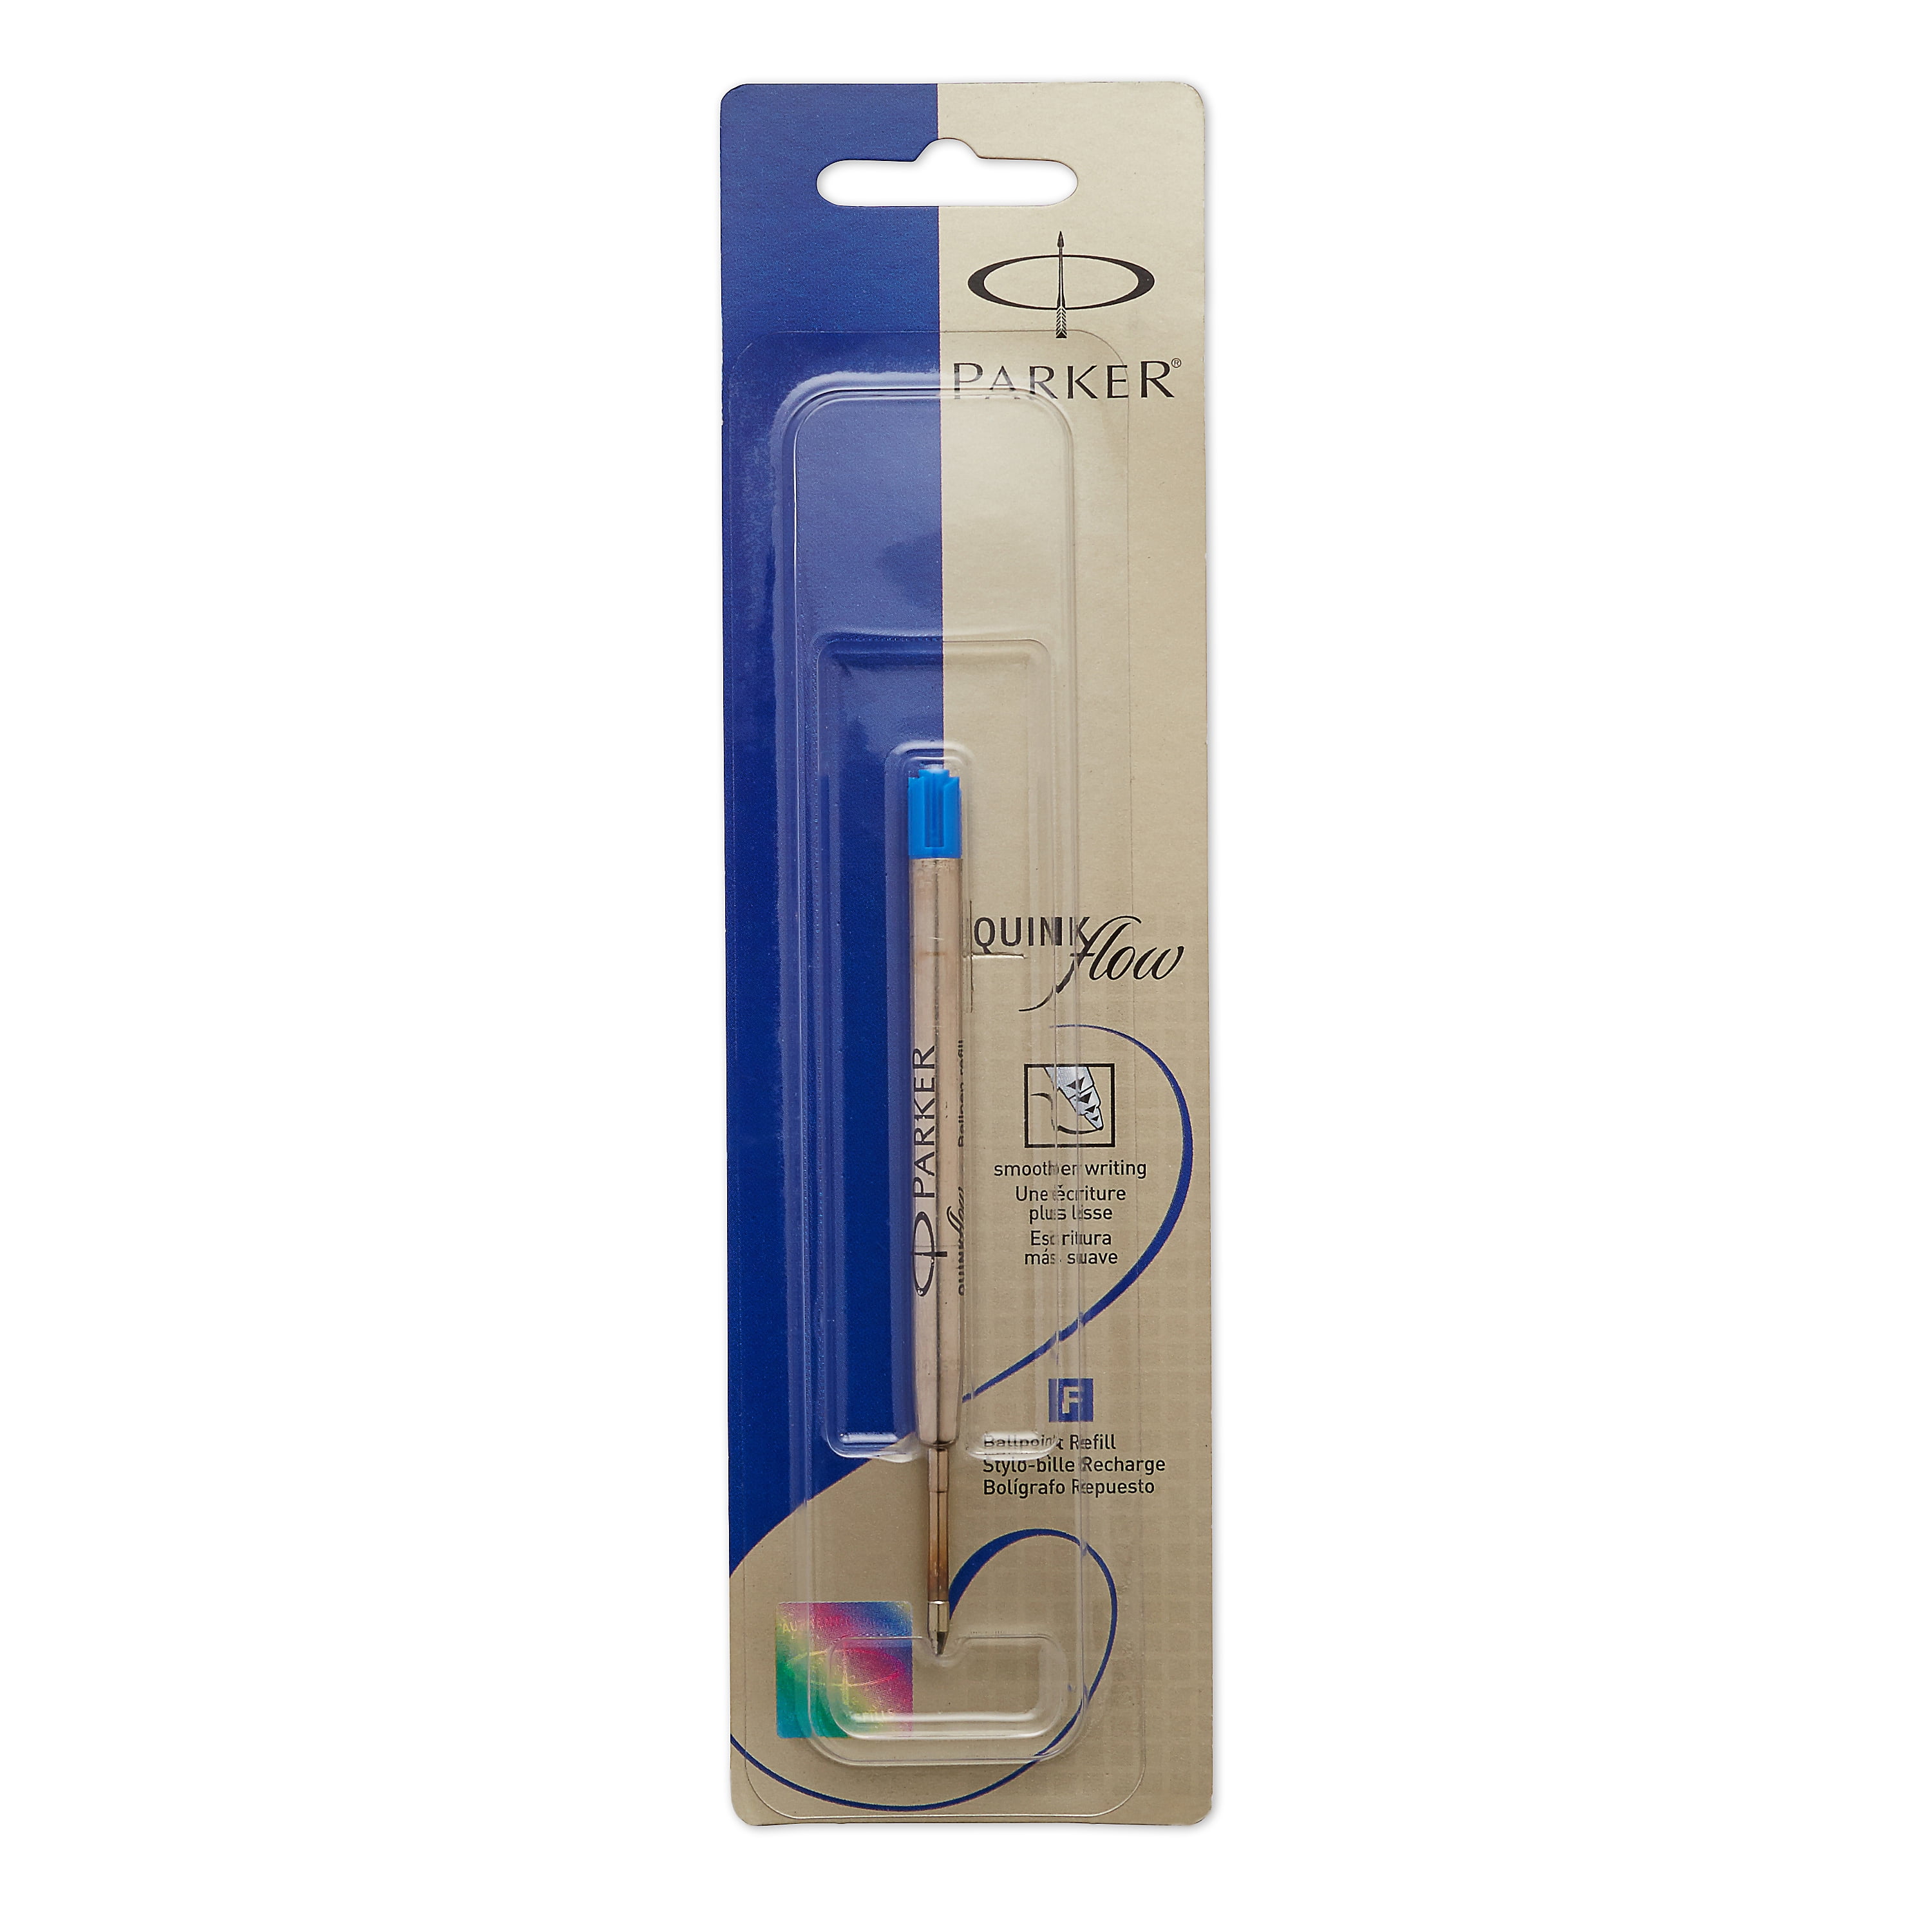 6 x Parker Jotter Classic Ball Point Pen Refills Medium 1mm Tip New Blue Ink 